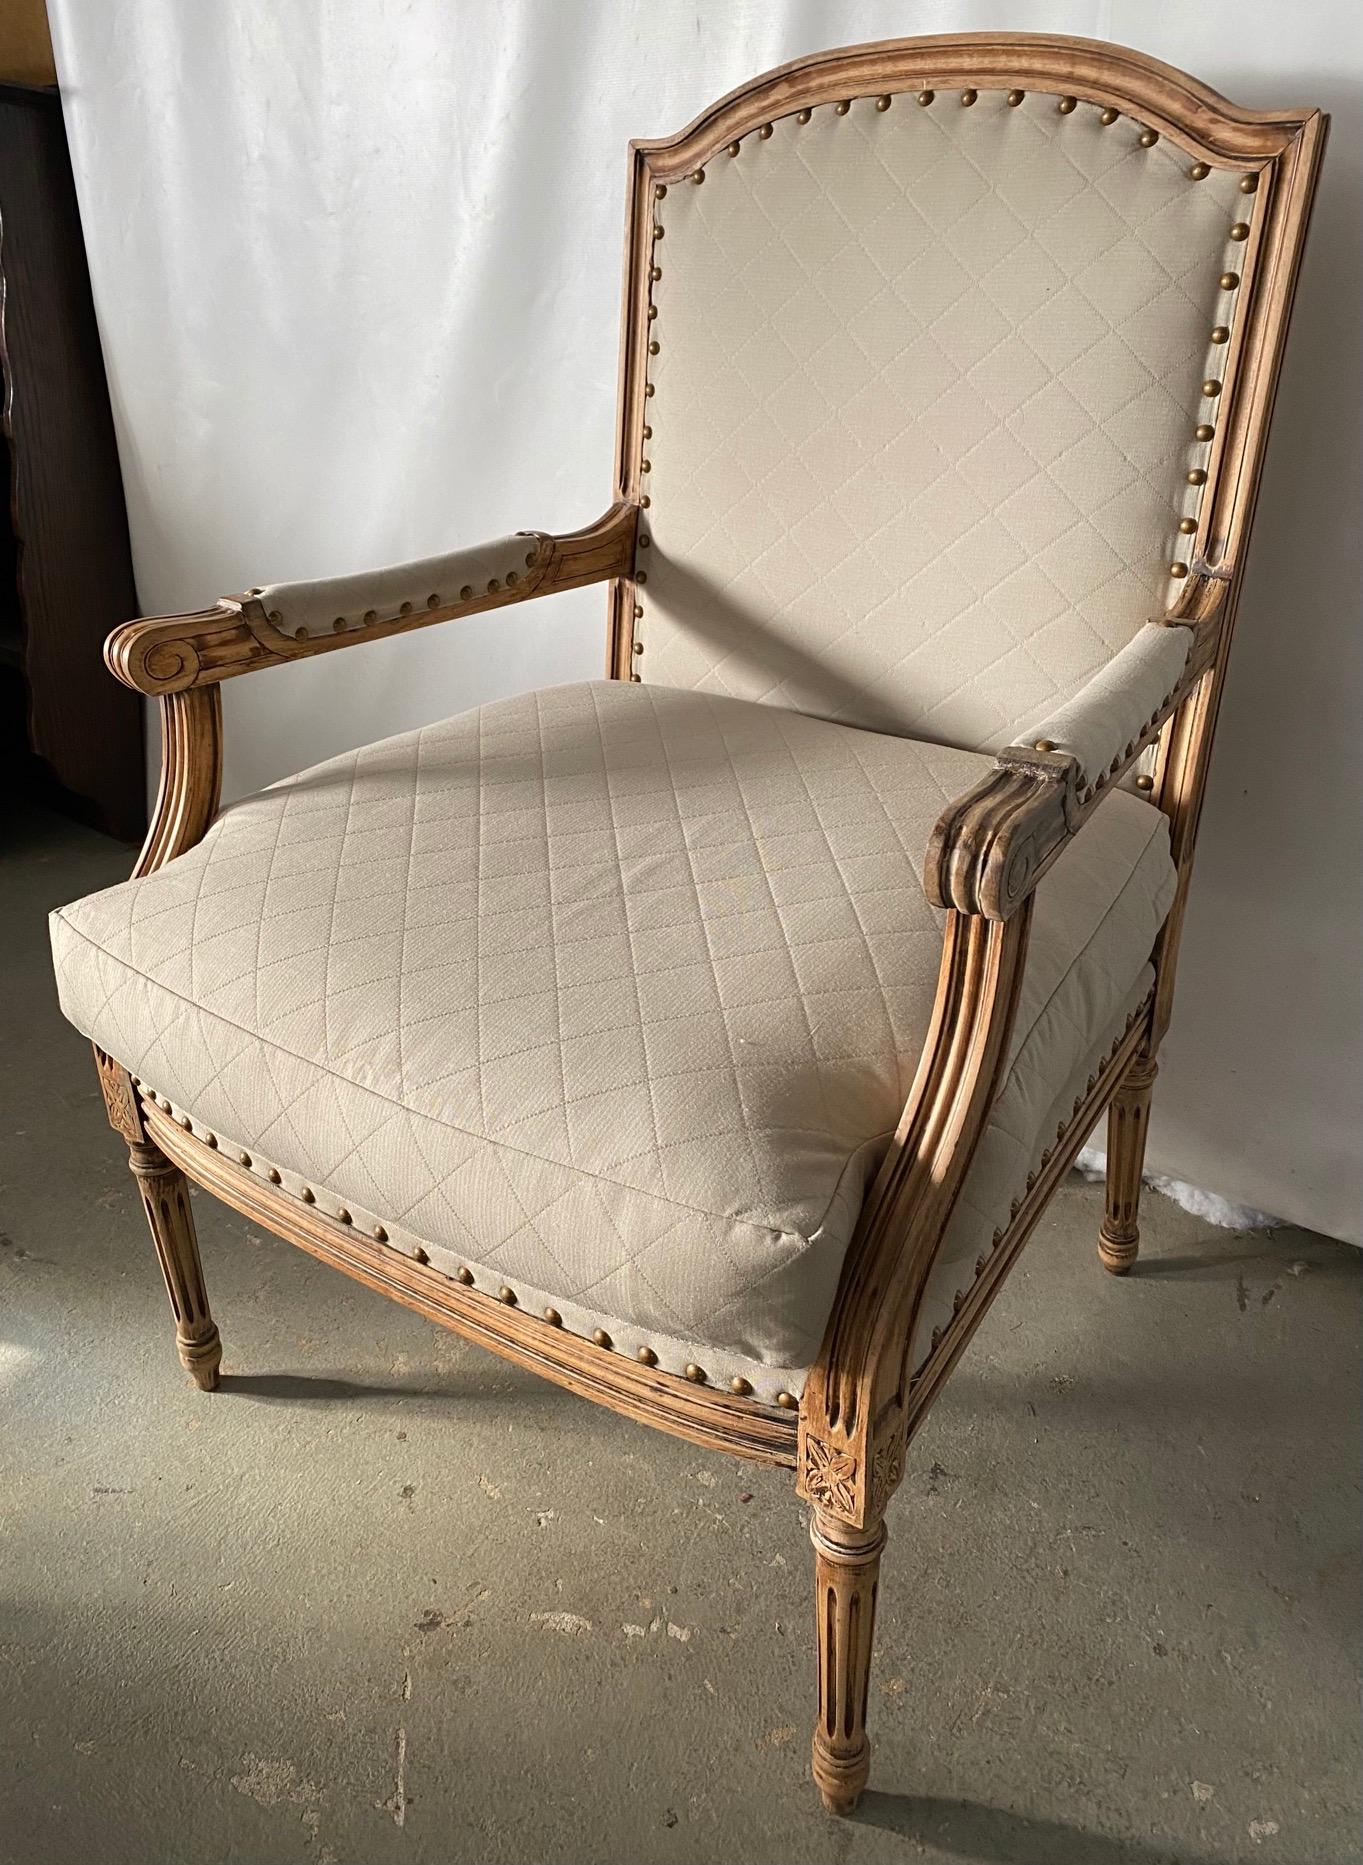 Elégant fauteuil français de style Louis XVI et sa chaise d'appoint complémentaire, en bois blanchi, pieds cannelés et blocs cubiques décorés de fleurons, tapissés de tissu matelassé beige classique. Convient à une chaise de salle à manger, de